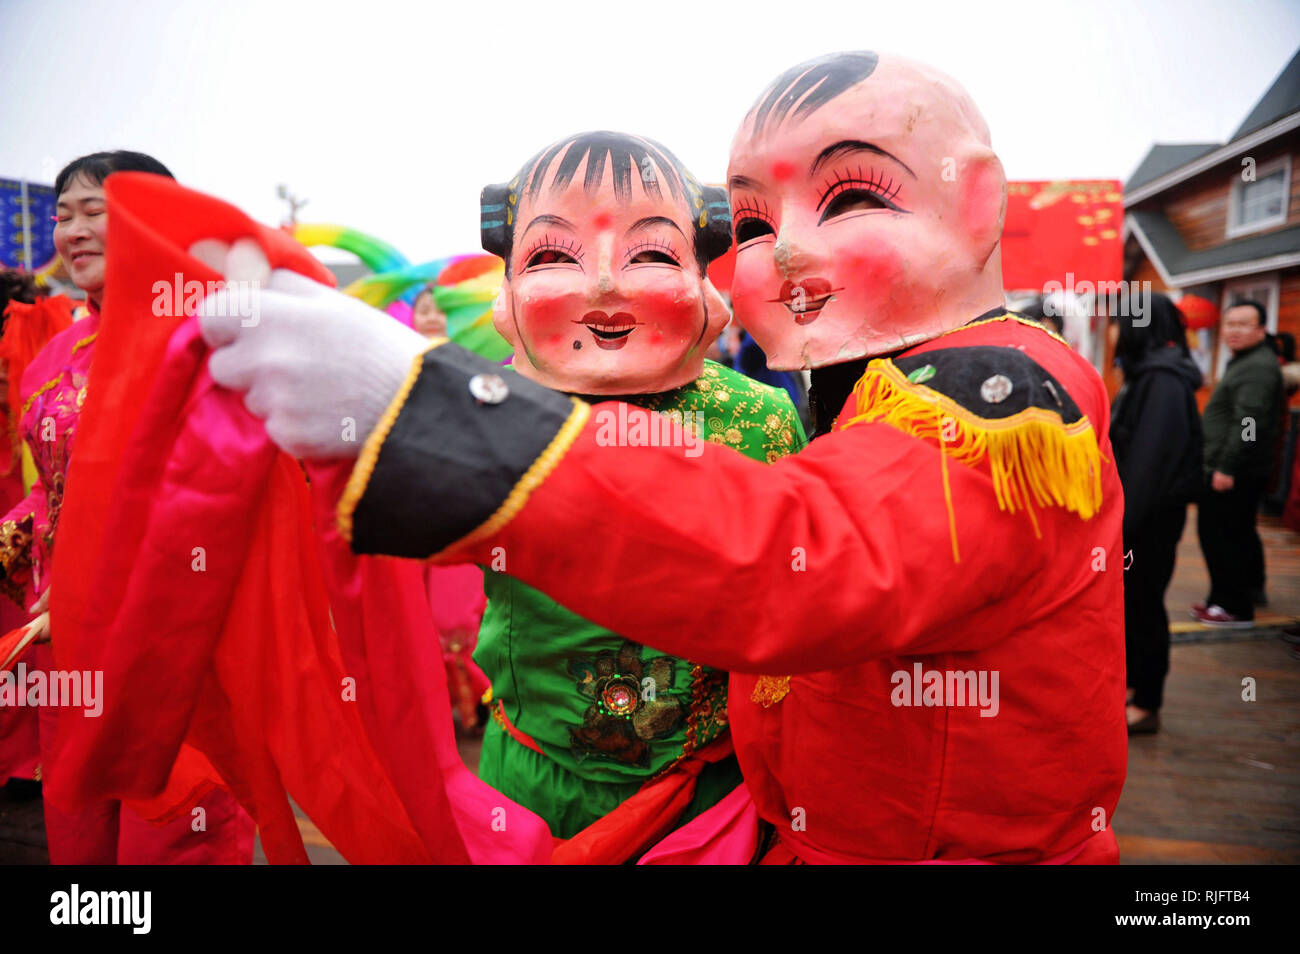 Qingdao, Chine, la province de Shandong. Feb 6, 2019. Artistes Folk effectuer durant un festival culturel à Qingdao, province de Shandong en Chine orientale, le 6 février 2019. Diverses activités ont eu lieu dans tout le pays pour célébrer le Nouvel An chinois, ou Fête du Printemps, qui tombe le 5 février cette année. Credit : Yu Shaoyue/Xinhua/Alamy Live News Banque D'Images